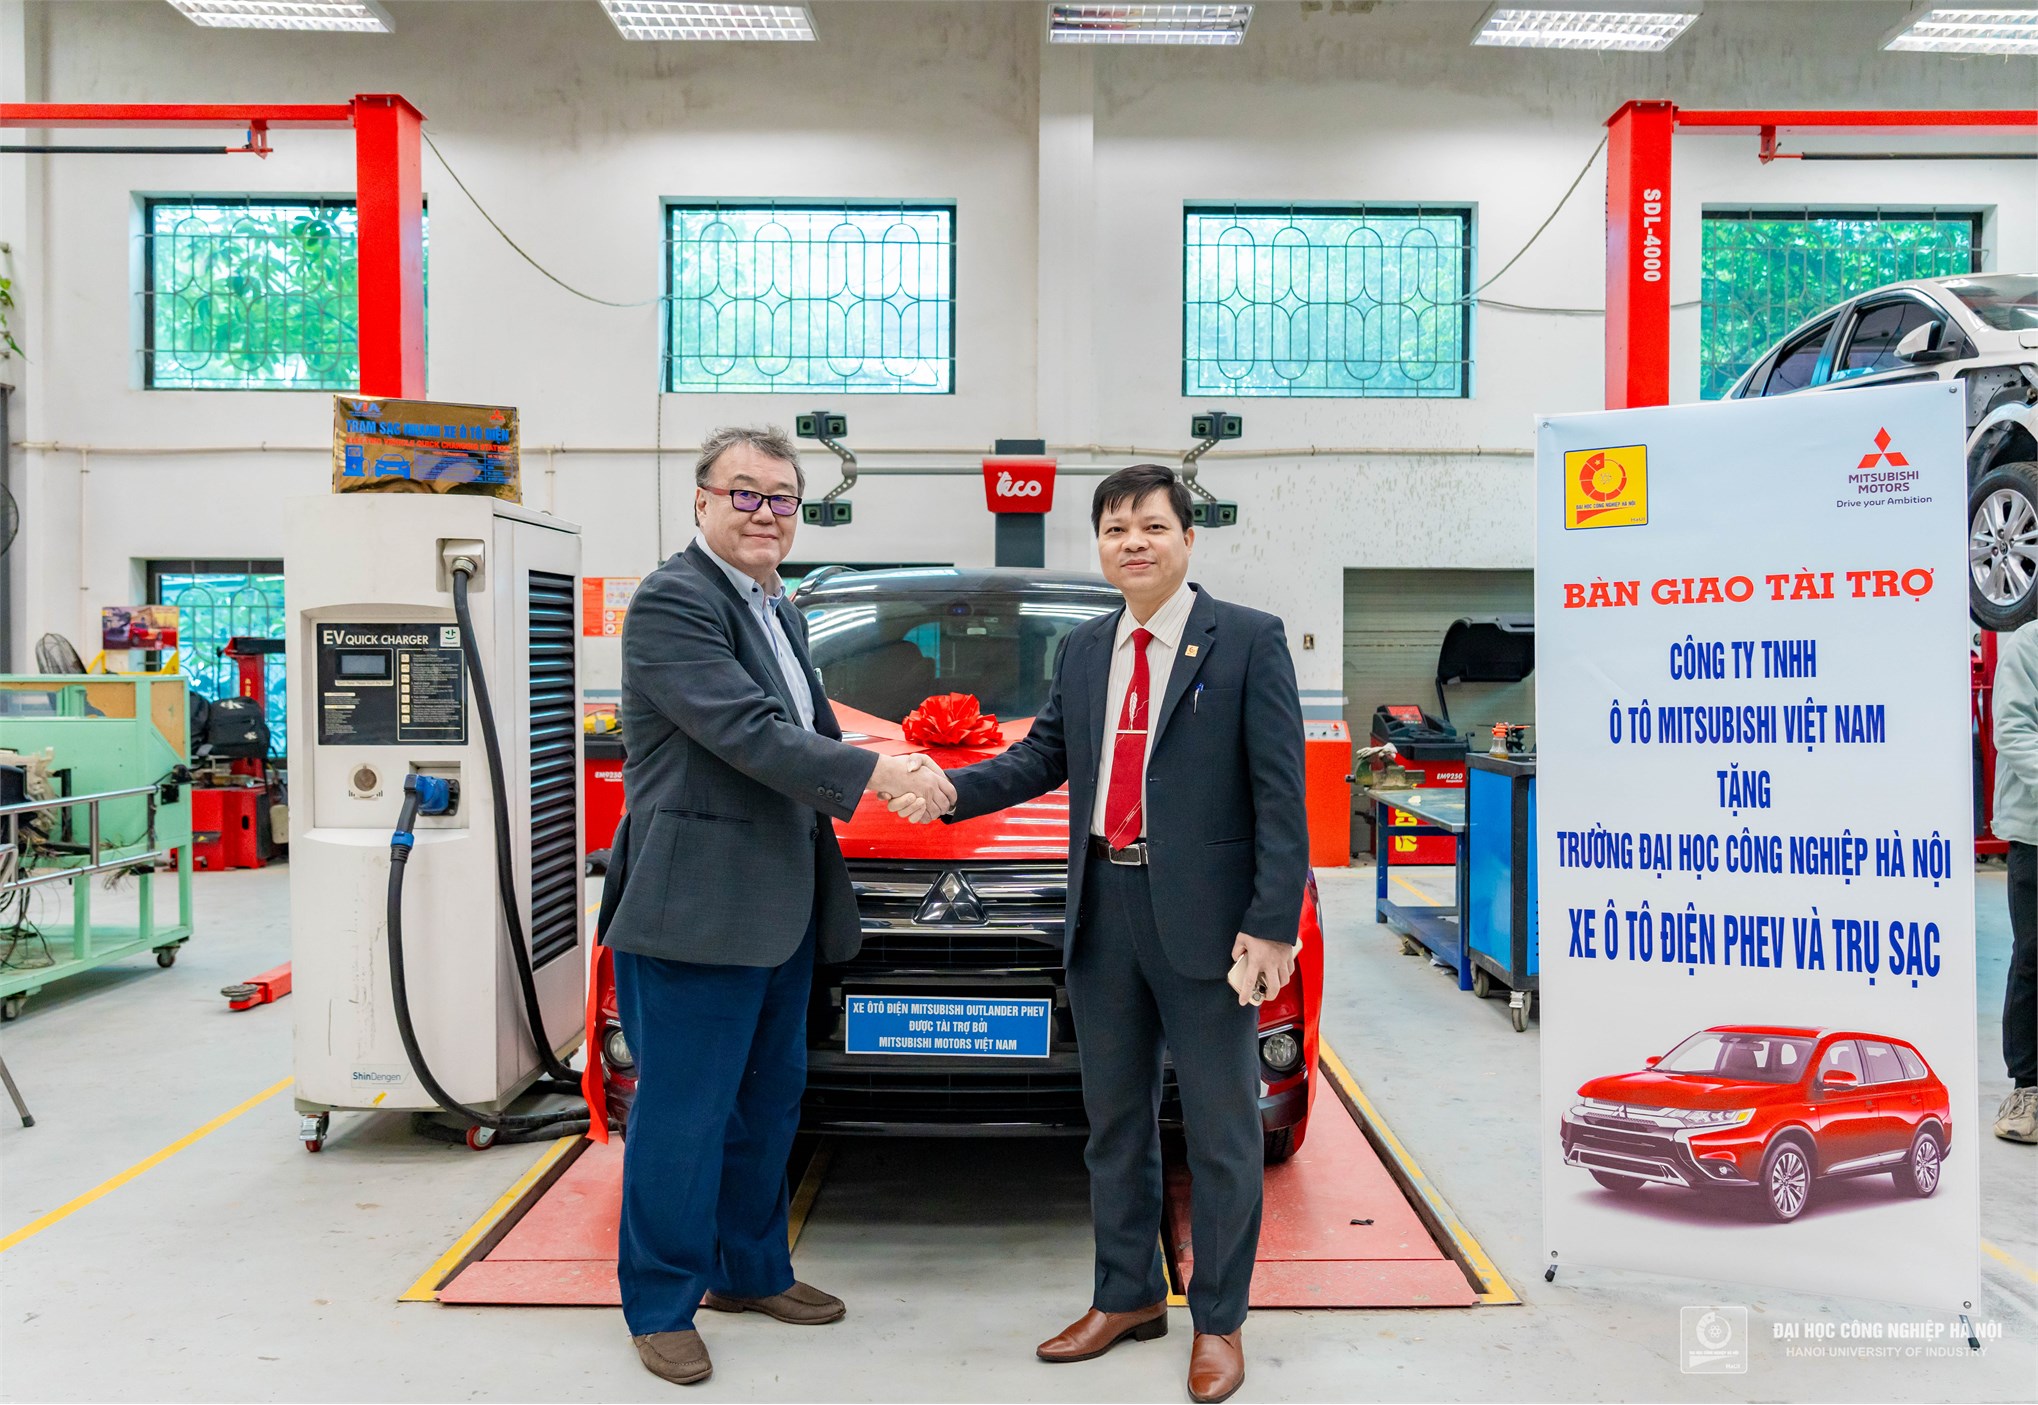 HaUI nhận bàn giao xe ô tô điện Phev và trụ sạc từ Mitsubishi Việt Nam